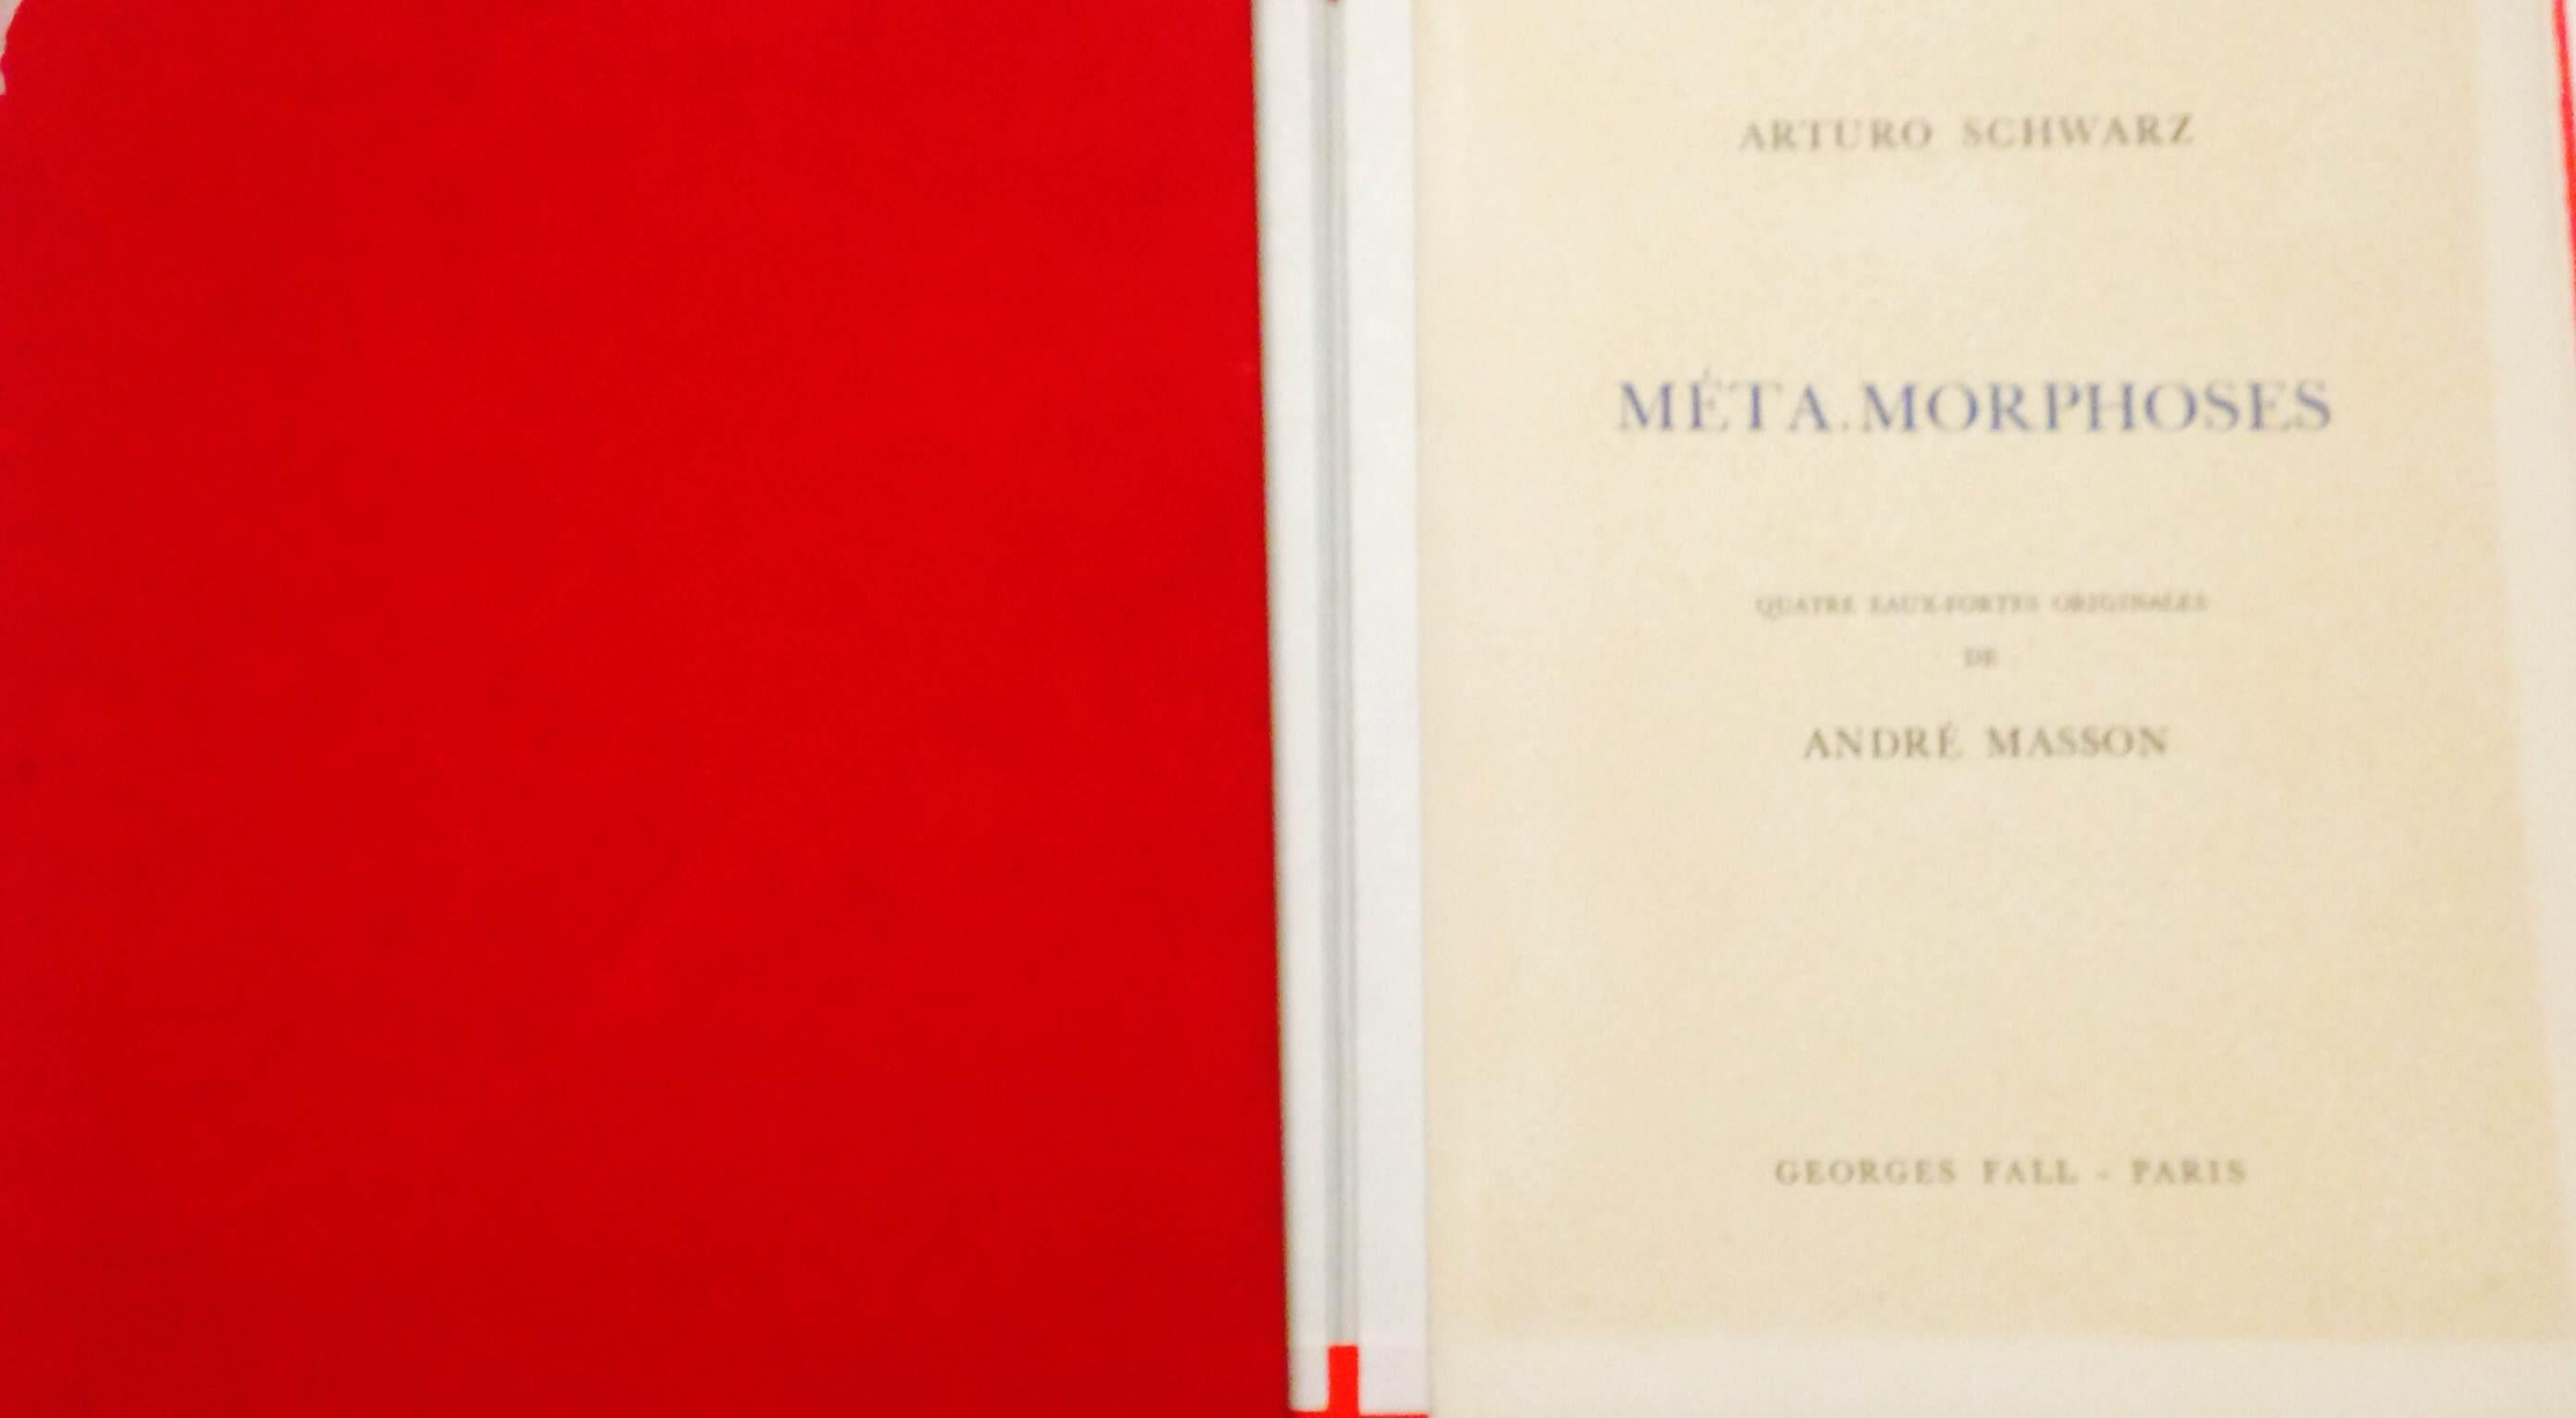 MetaMorphoses - Livre illustré d'Andr Masson, éditeur A. Schwarz - 1975 - Art de André Masson